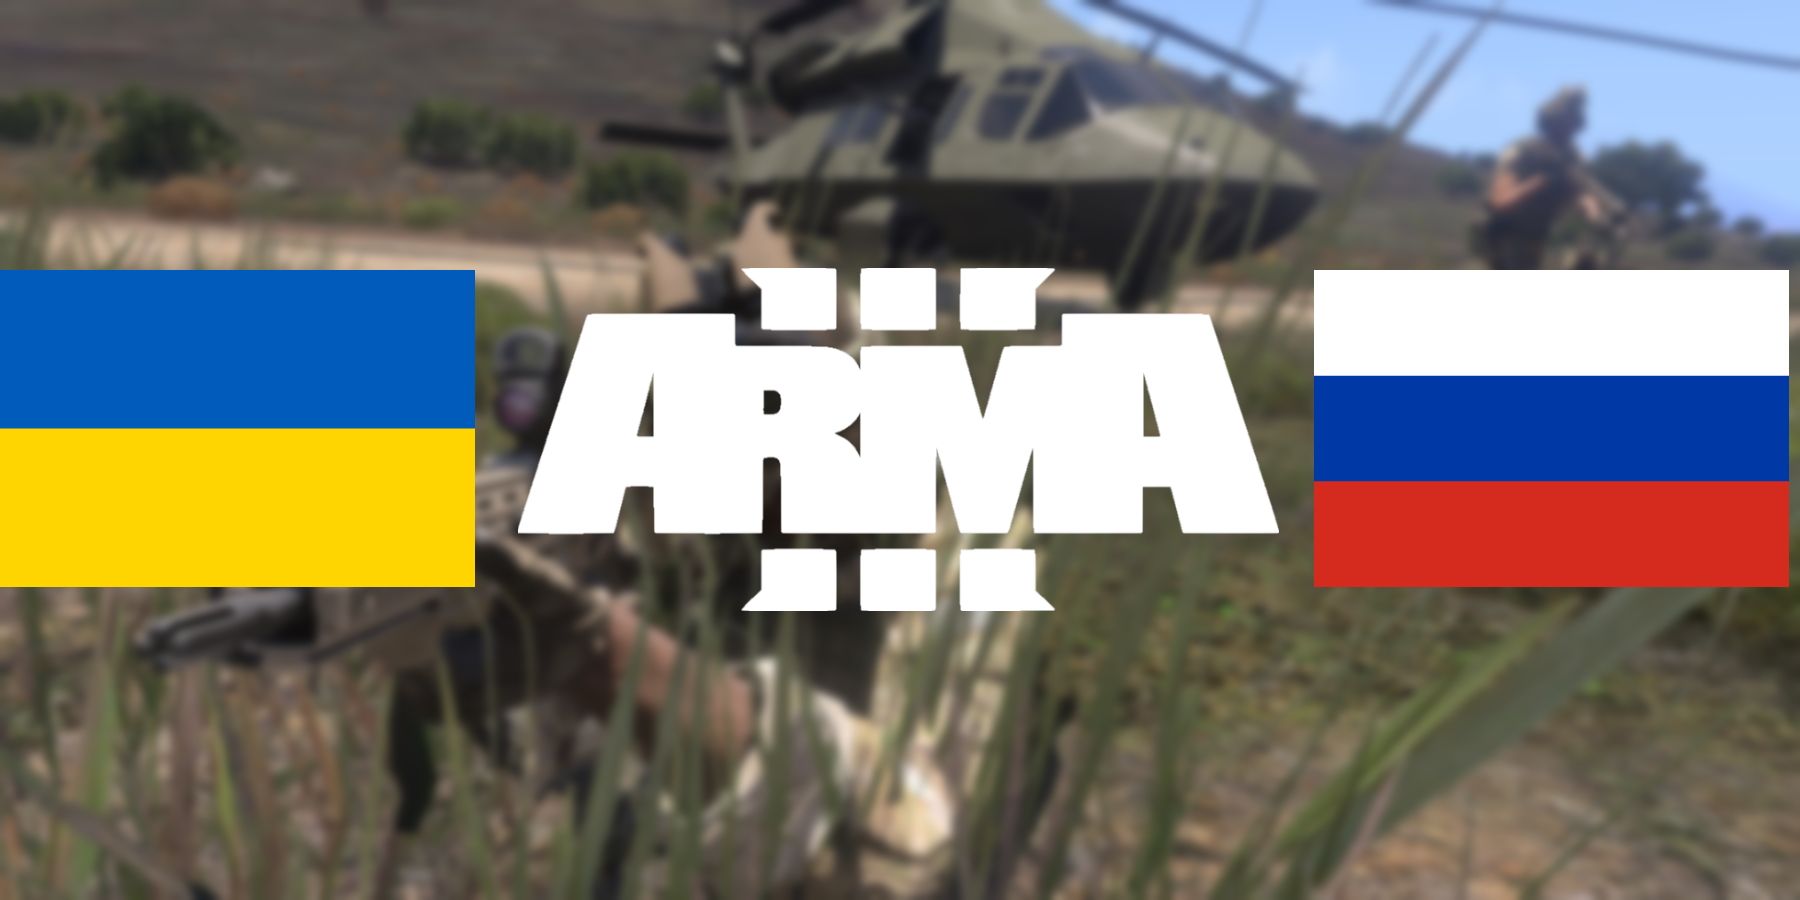 擬真軍事射擊遊戲《武裝行動 3》遊玩畫面被誤當成俄烏衝突真實影像瘋傳 - 電腦王阿達